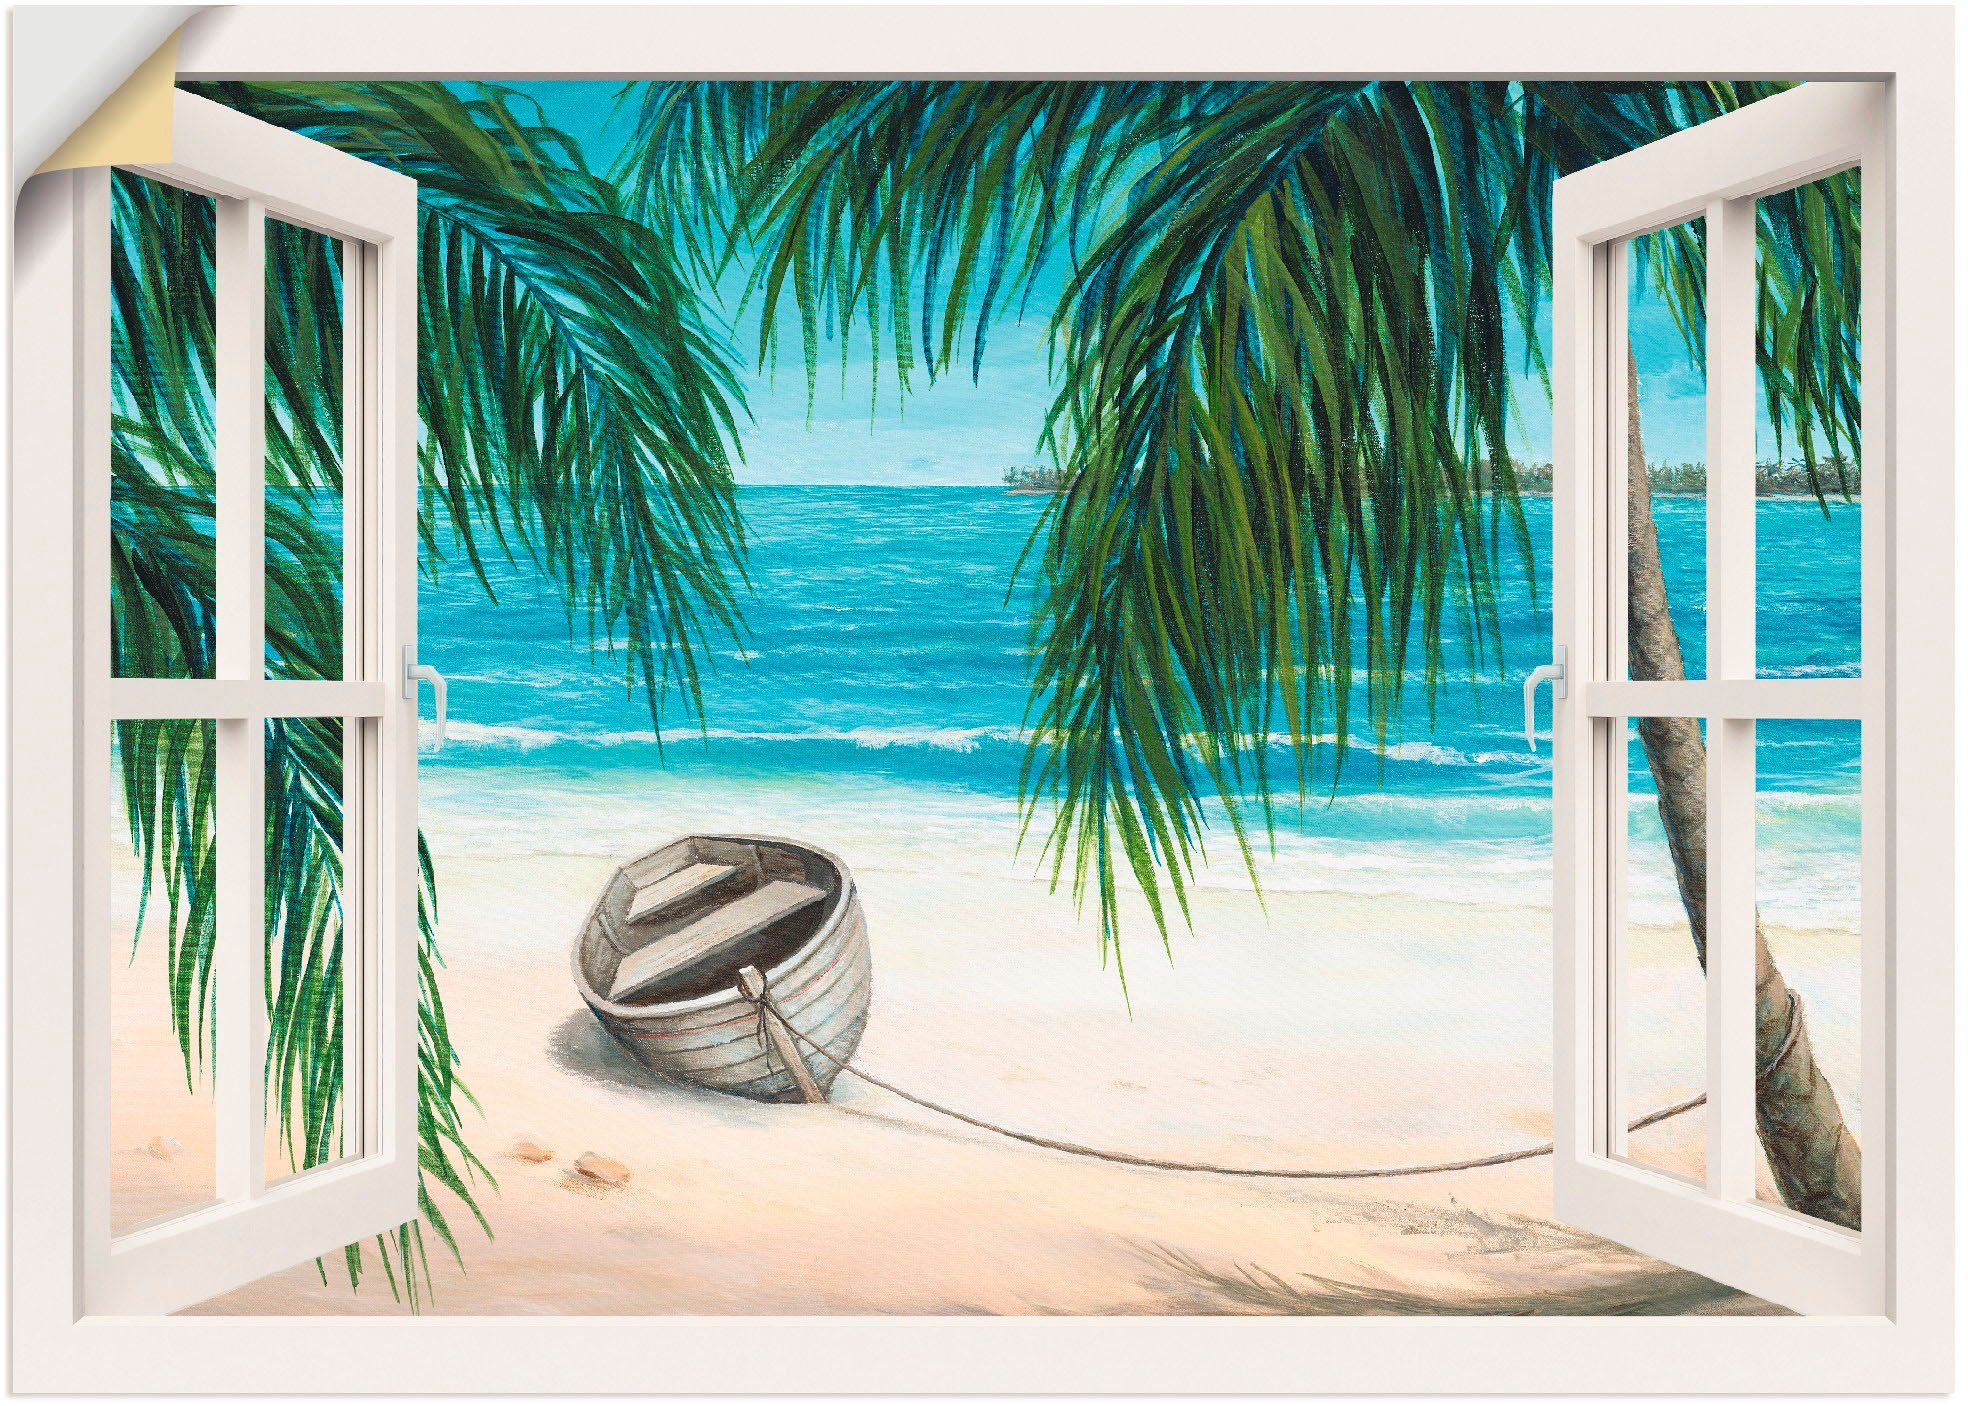 Artland Artprint Blik uit het venster - Caribic in vele afmetingen & productsoorten -artprint op linnen, poster, muursticker / wandfolie ook geschikt voor de badkamer (1 stuk)